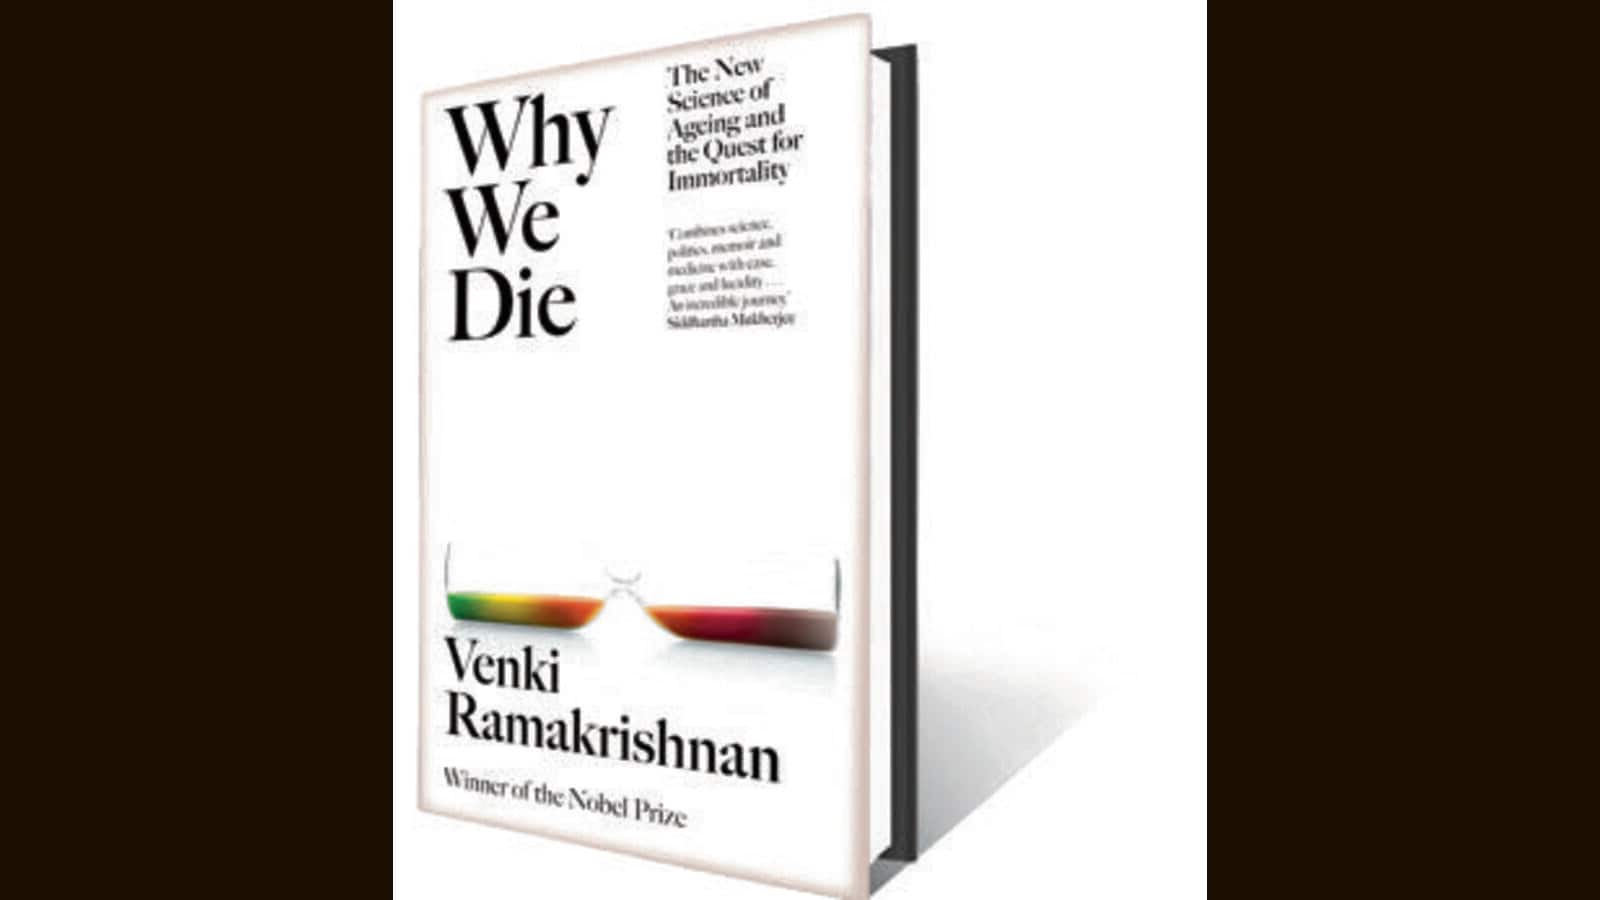 Read an exclusive excerpt from Why We Die by Nobel laureate Venki Ramakrishnan